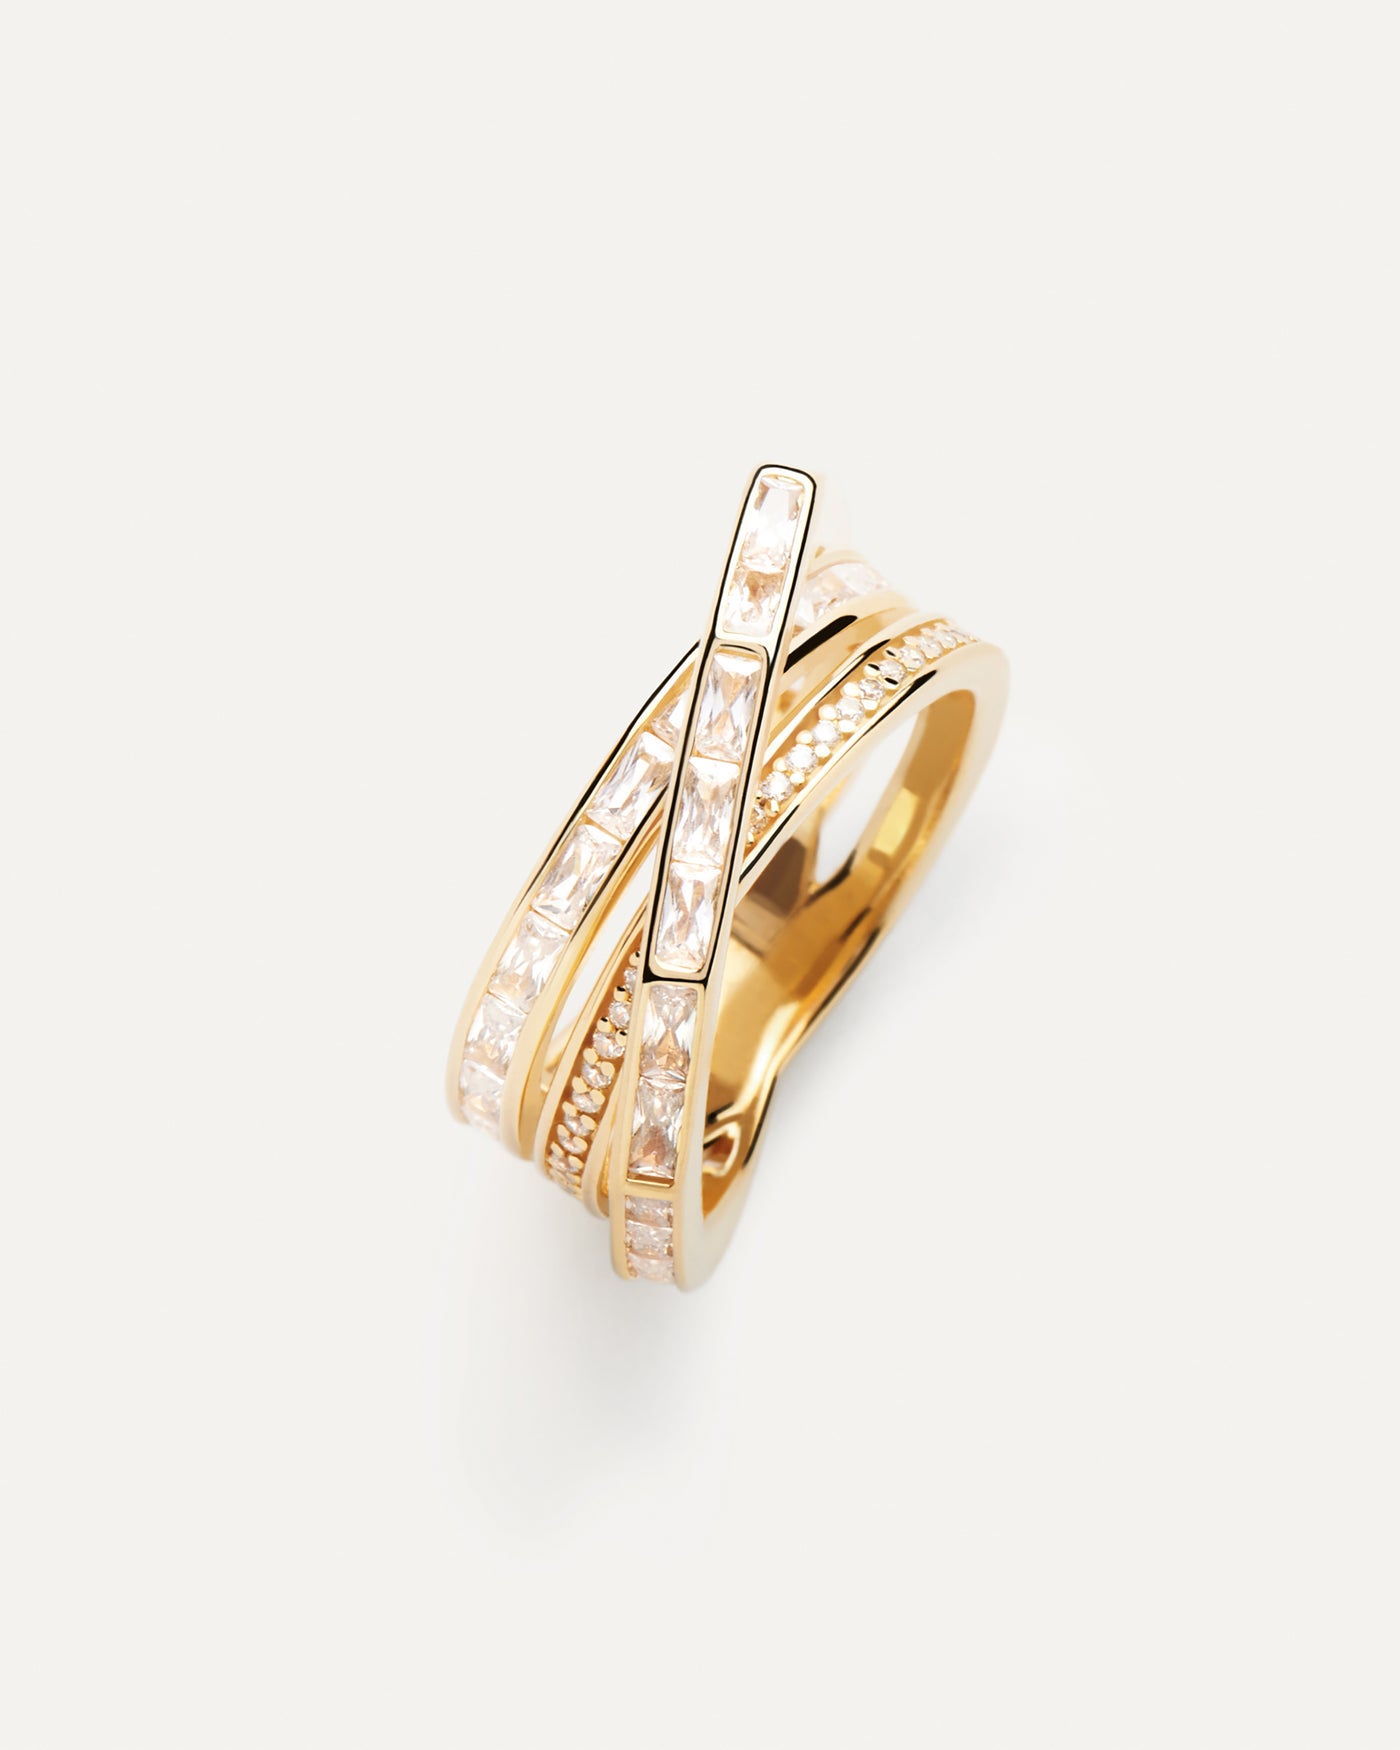 Verona Ring. Vergoldeter Eternity ring mit rechteckigem weißem Zirkon im Rechteckschliff. Erhalten Sie die neuesten Produkte von PDPAOLA. Geben Sie Ihre Bestellung sicher auf und erhalten Sie diesen Bestseller.